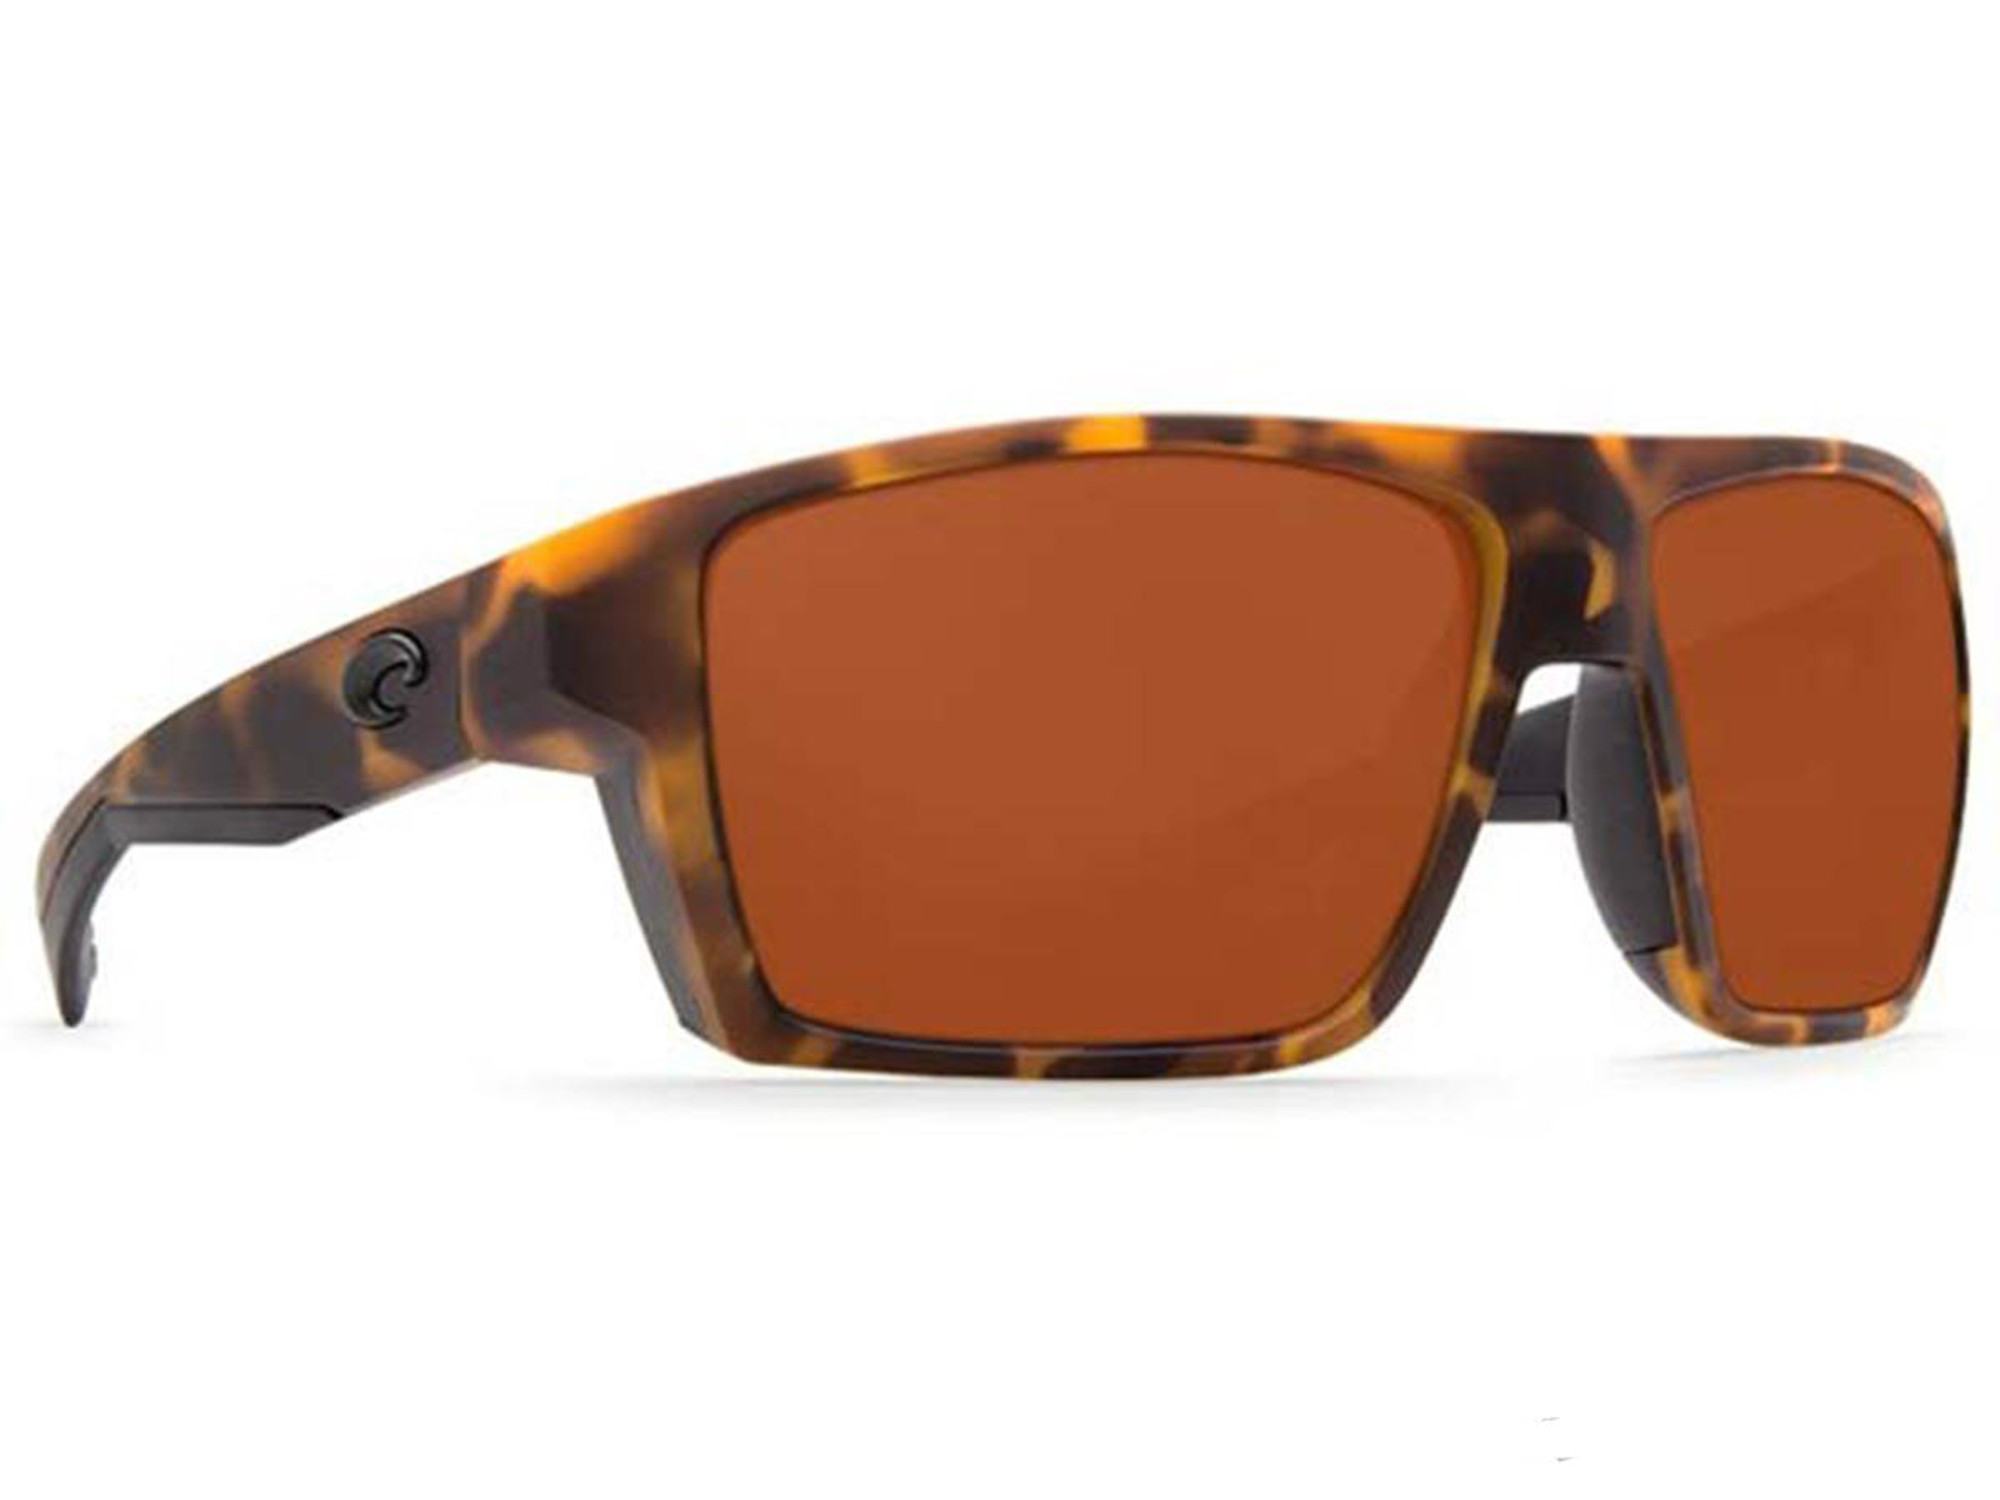 Costa Del Mar - Bloke Polarized Sunglasses - Matte Retro Tortoise / 580p Matte Black Copper